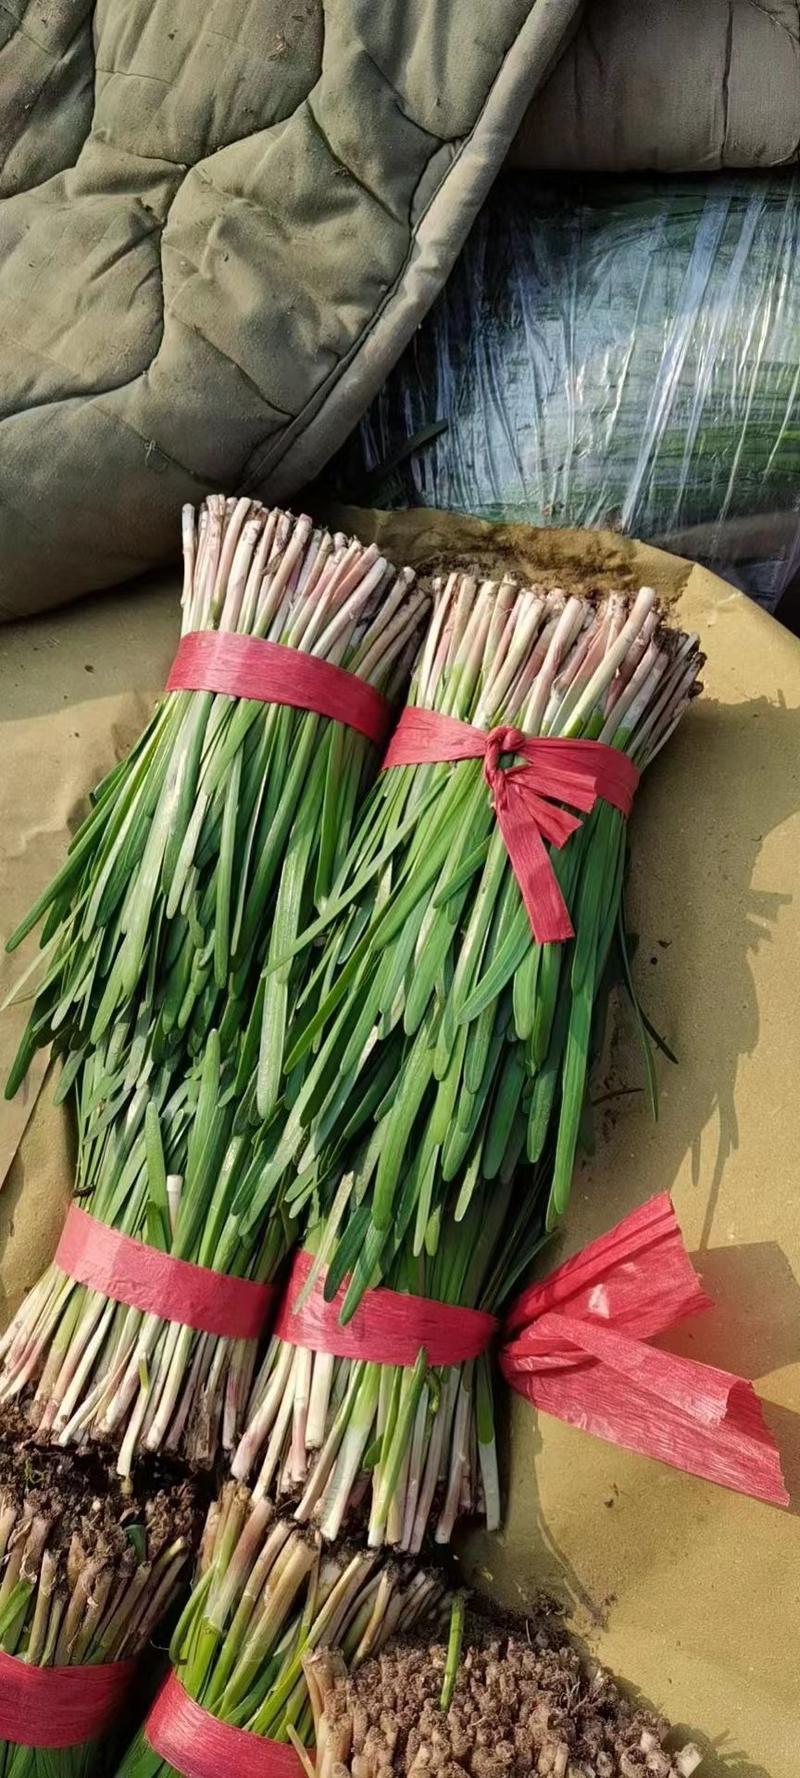 河北昌黎红根韭菜产地一手代办质量保证价格美丽长期供应